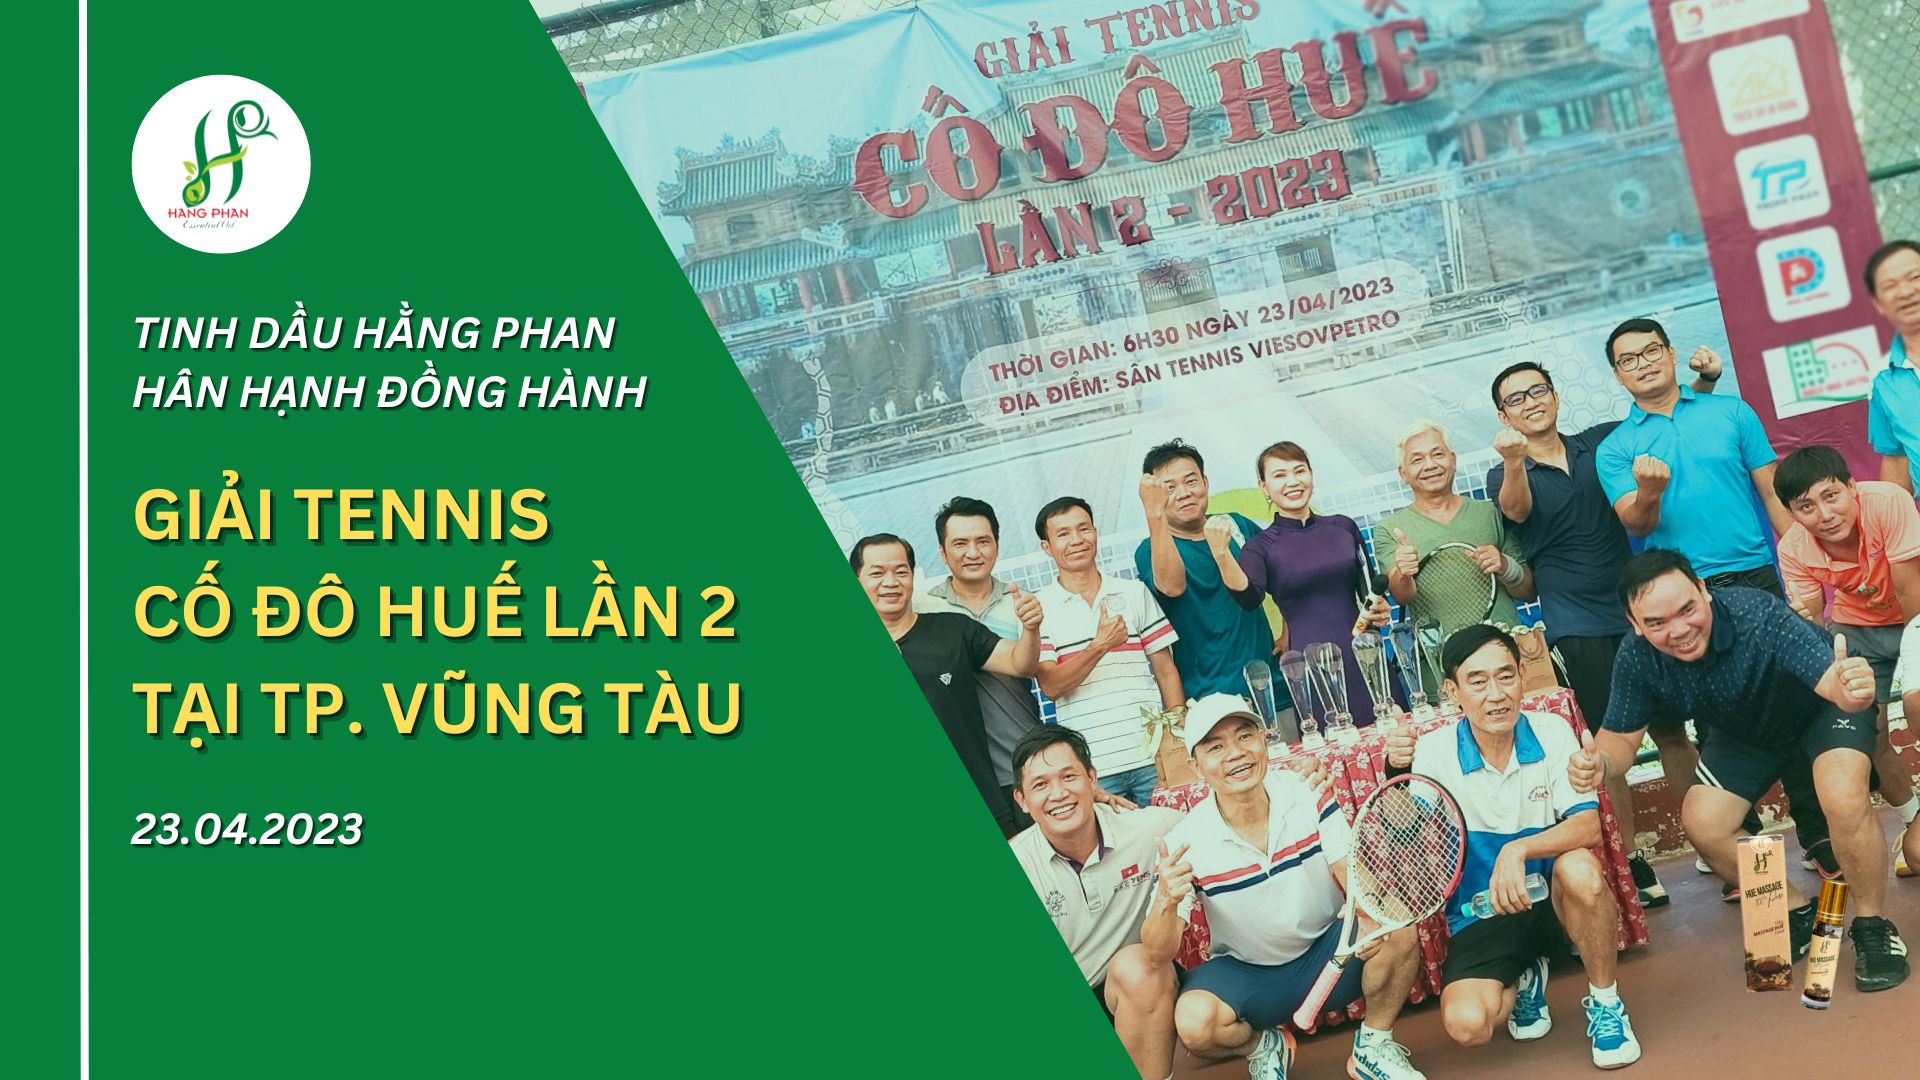 tinh-dau-hang-phan-tai-tro-giai-tennis-co-do-hue-tai-tp-vung-tau-2023